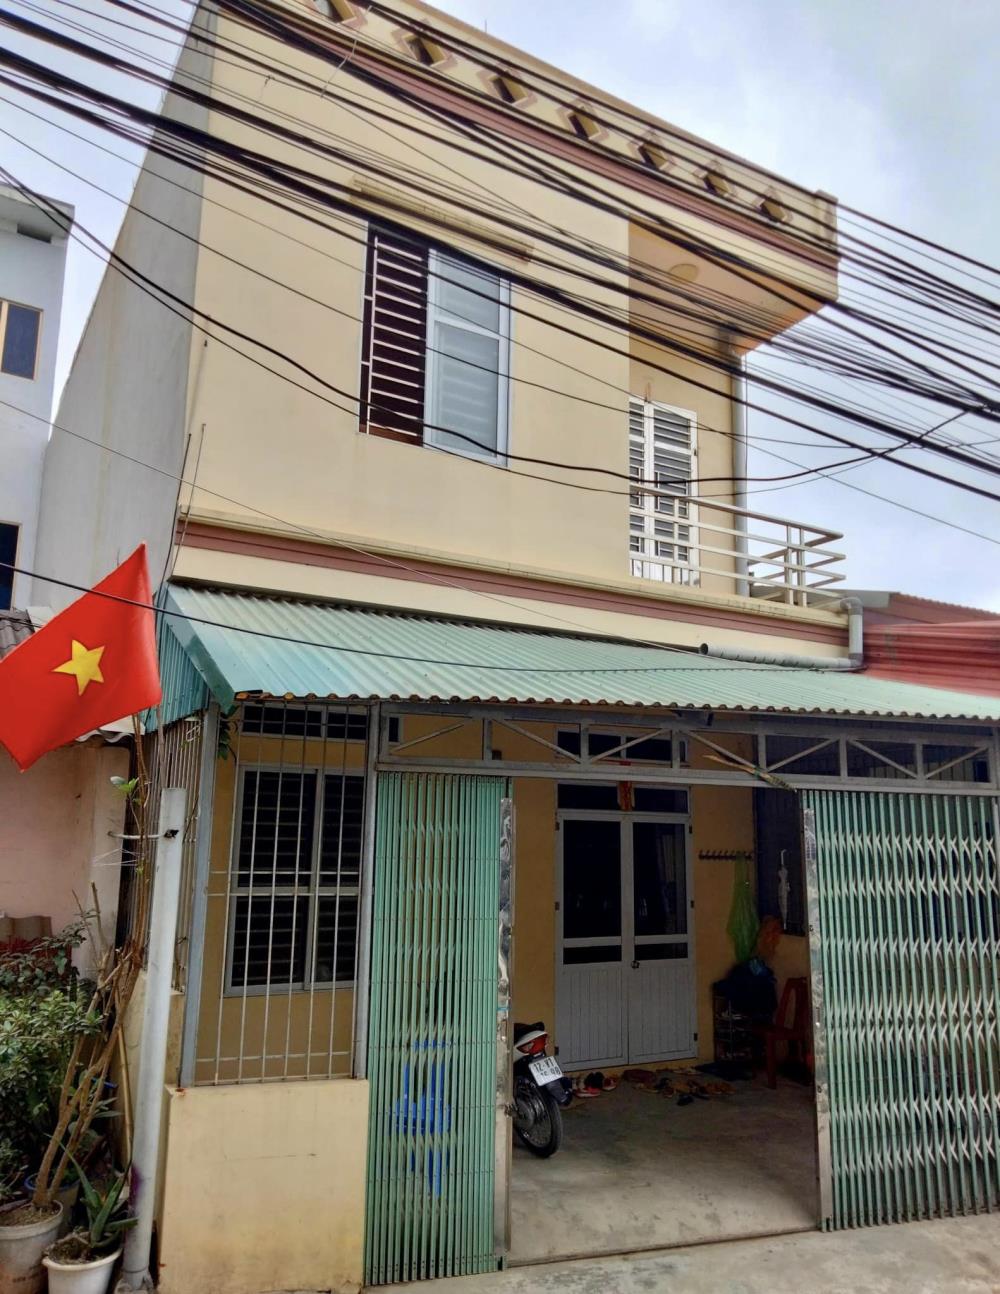 Chính chủ cần bán nhà Số 16 ngõ 2 đường Trần Đăng Ninh, thôn Hoàng Thượng, xã Hoàng Đồng, TP Lạng Sơn.135280